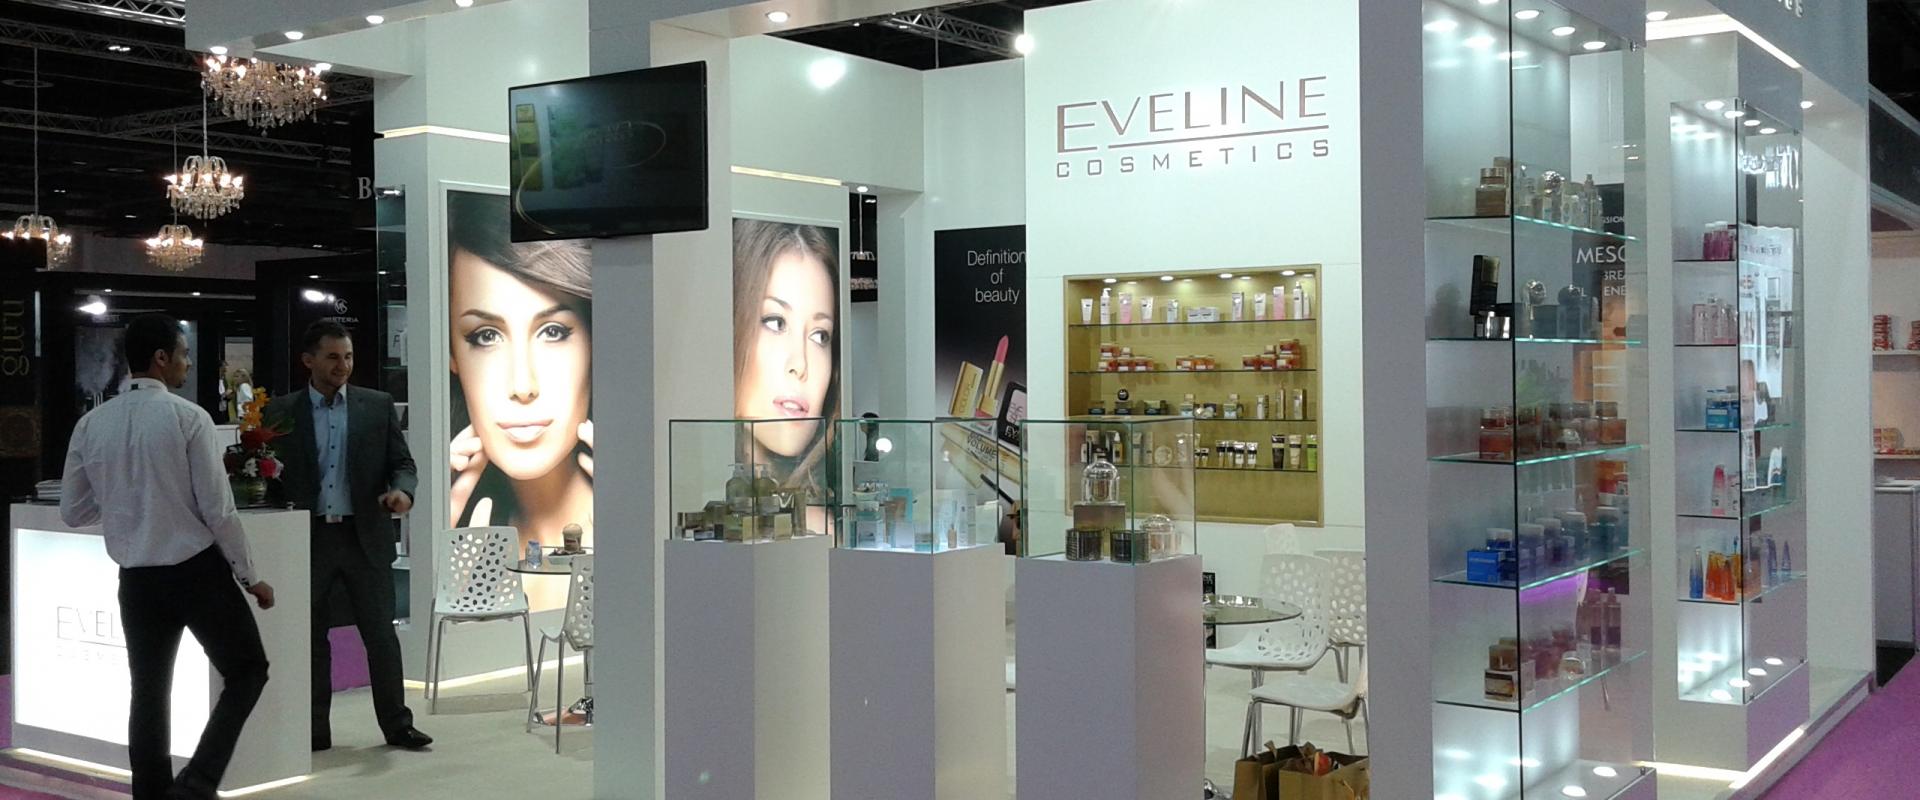 Eveline Cosmetics: na rynkach z licznymi barierami wejścia, przydałyby się korzystne dla polskich eksporterów umowy dwustronne